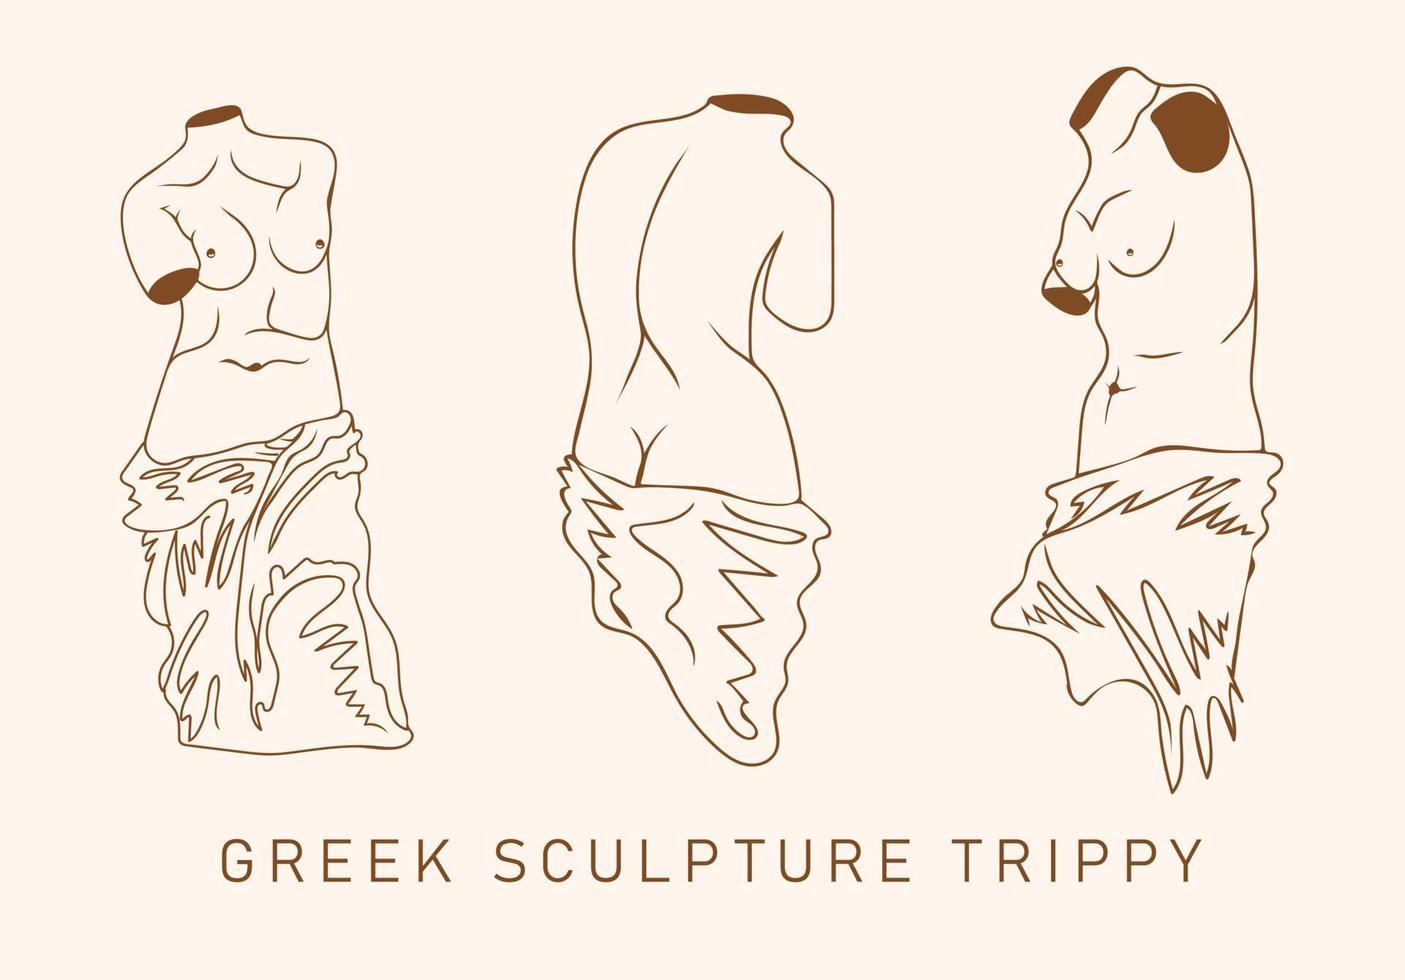 Grieks beeldhouwwerk trippy. vector hand- getrokken illustratie van menselijk vrouw lichamen